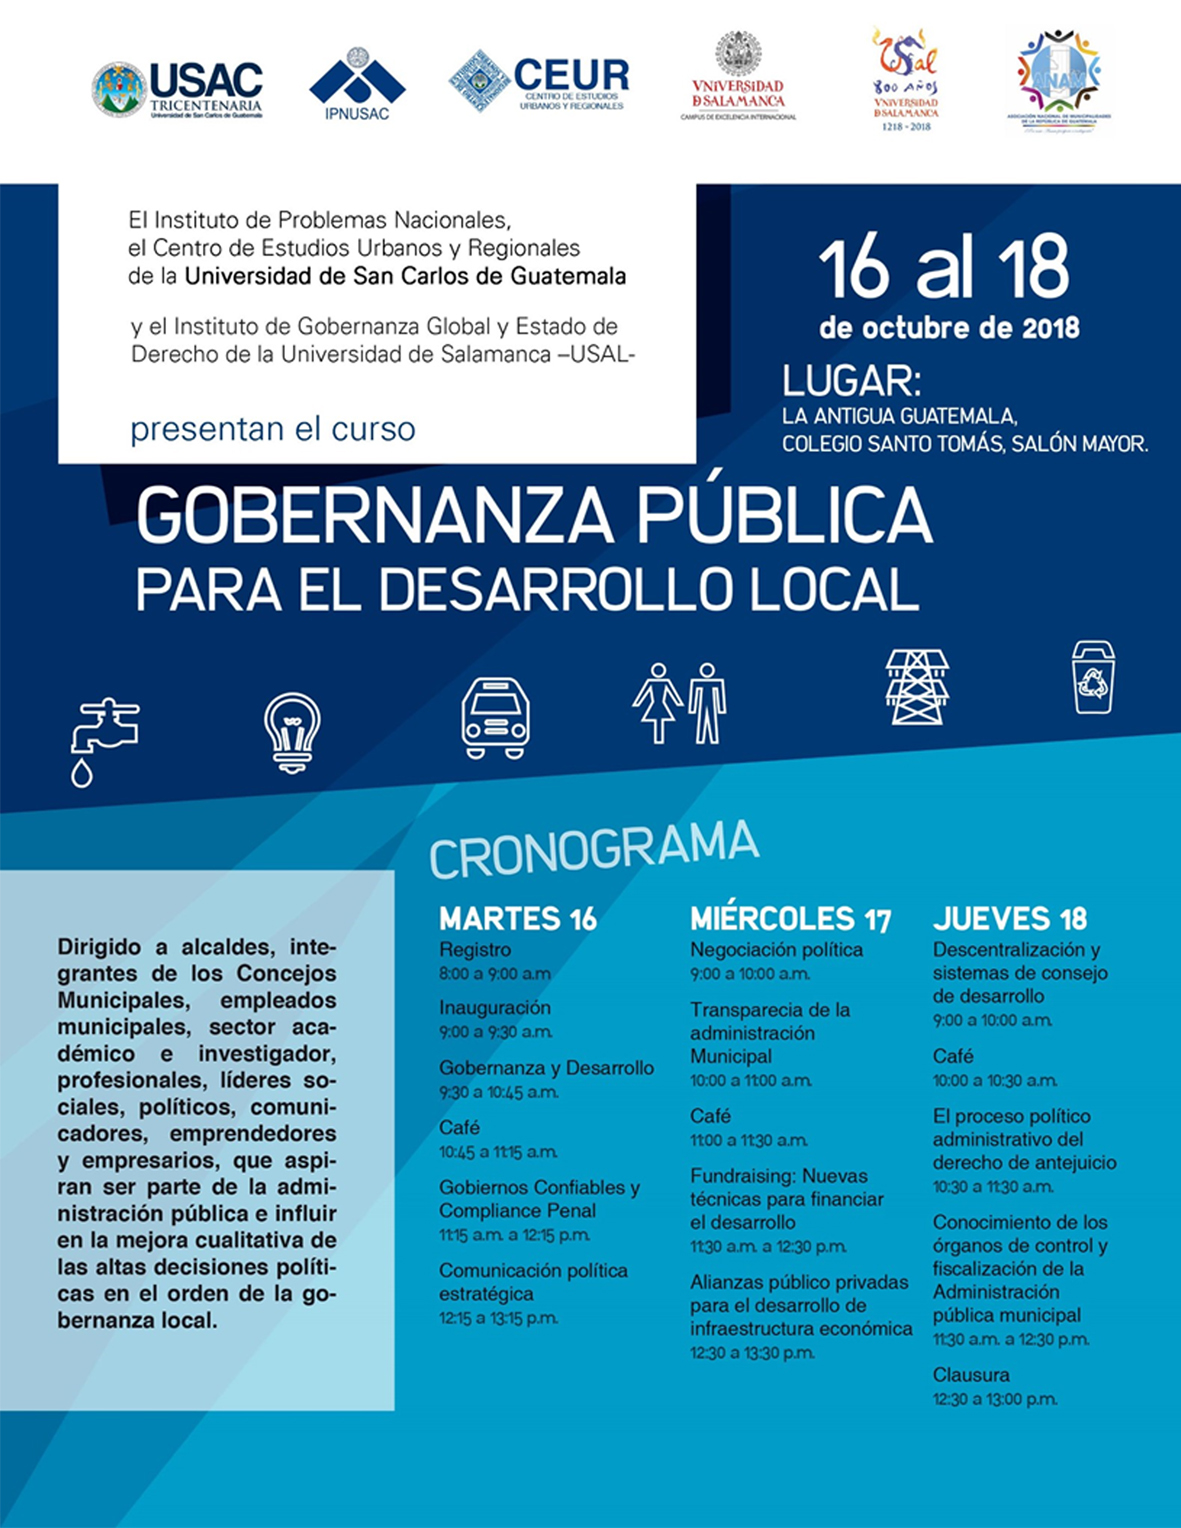 CURSO: GOBERNANZA PUBLICA para el desarrollo local, 16 al 18 de octubre 2018 #CEUR